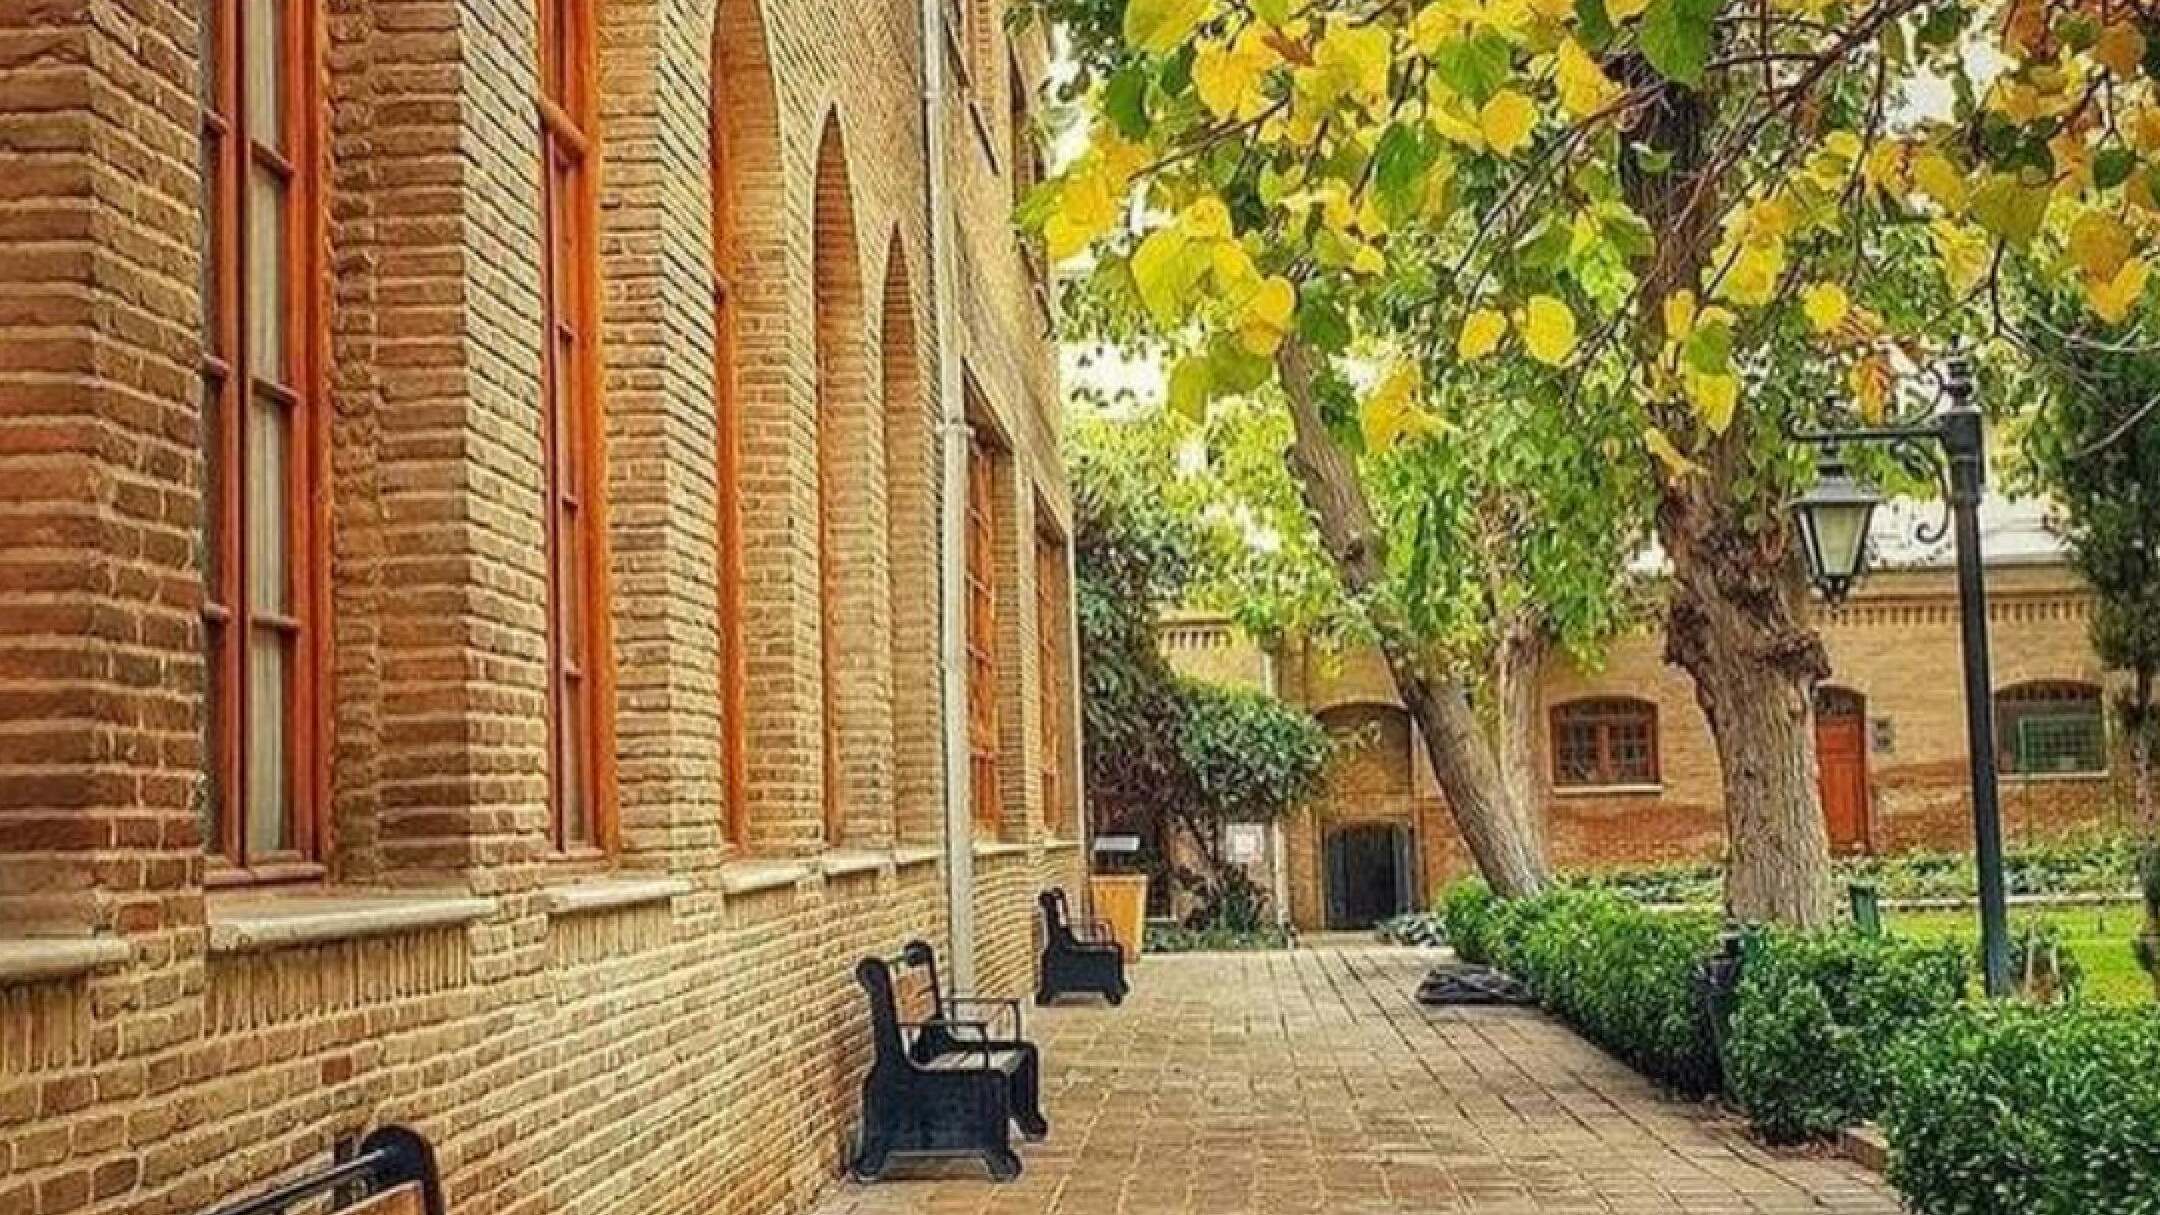 موزه آبگینه و سفالینه های ایران